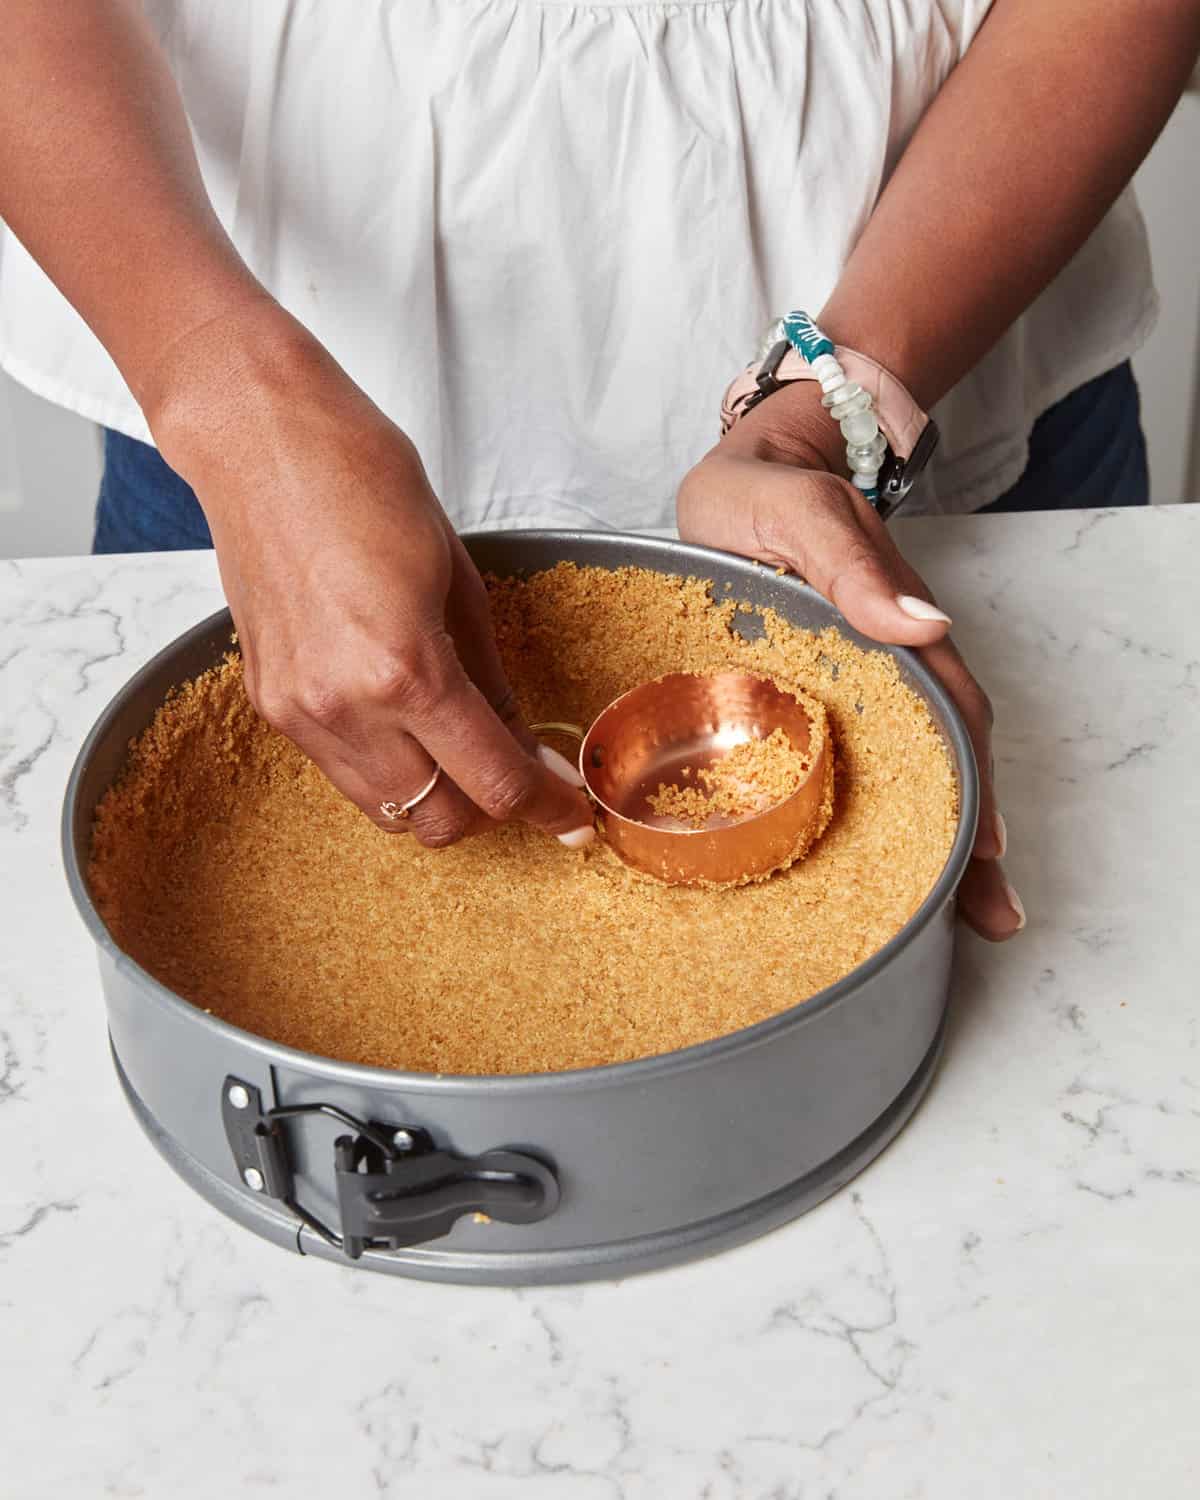 Pressing graham crumb crust into a springform pan.